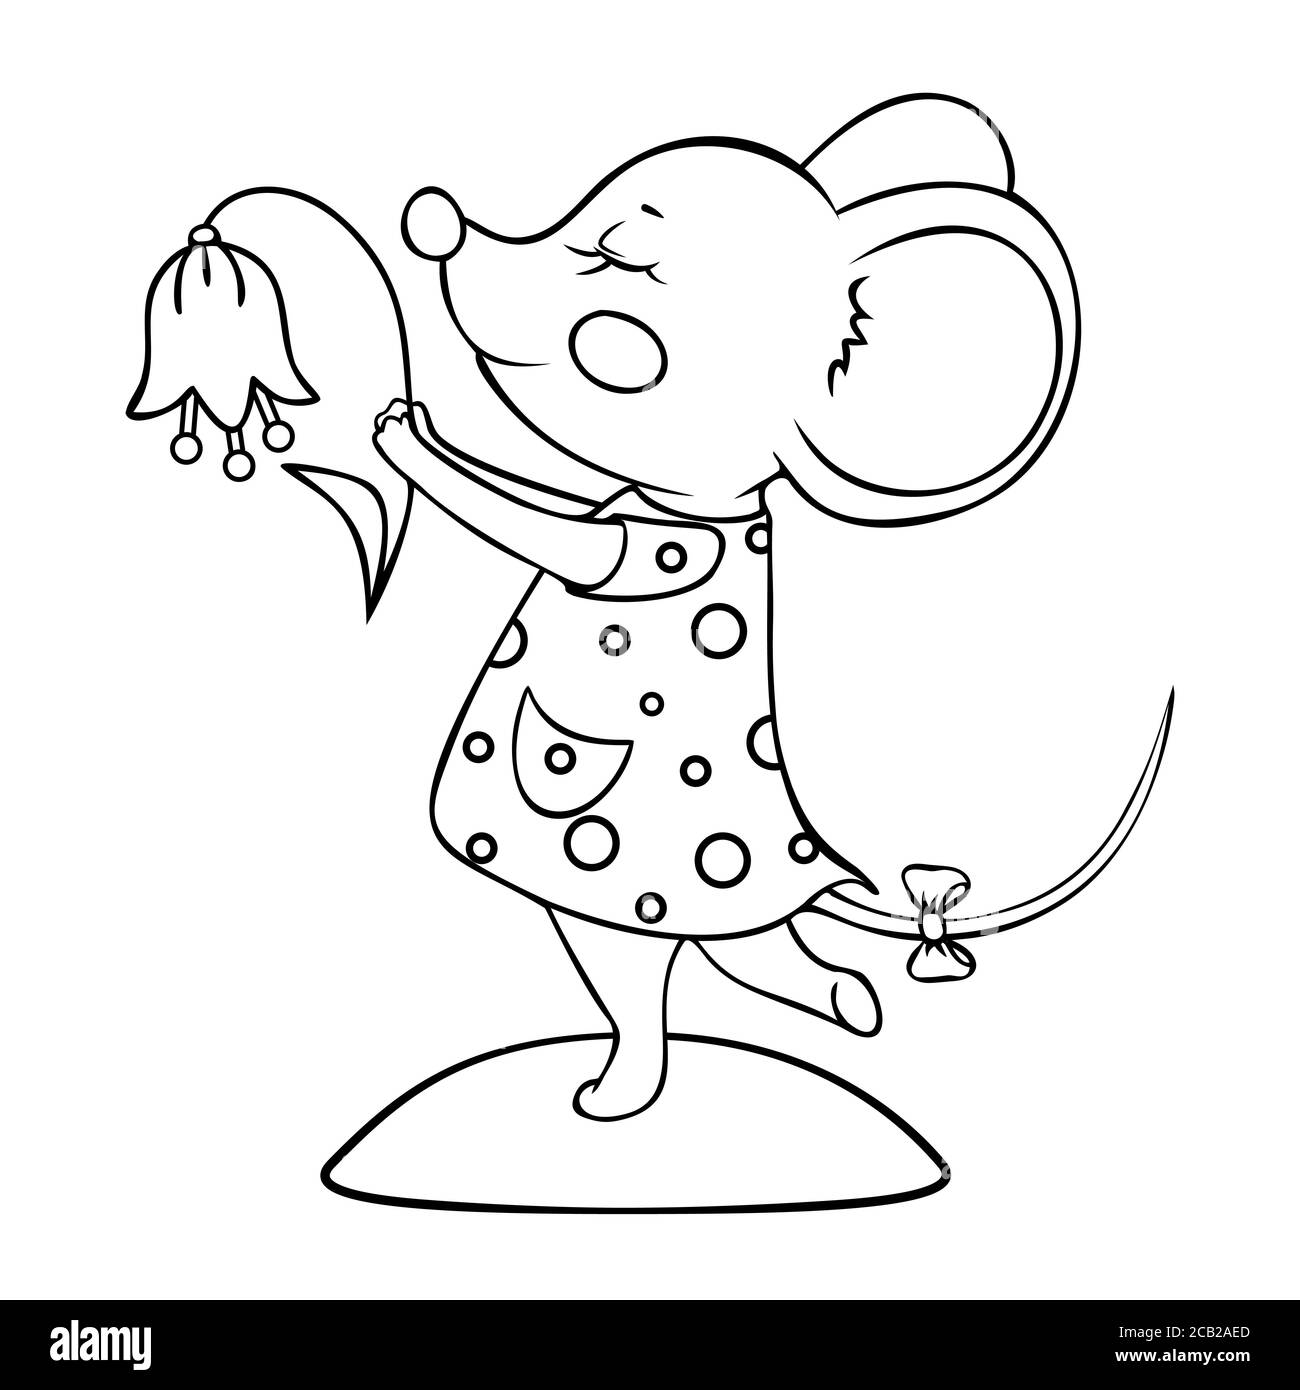 Dancing mouse Imágenes de stock en blanco y negro - Alamy